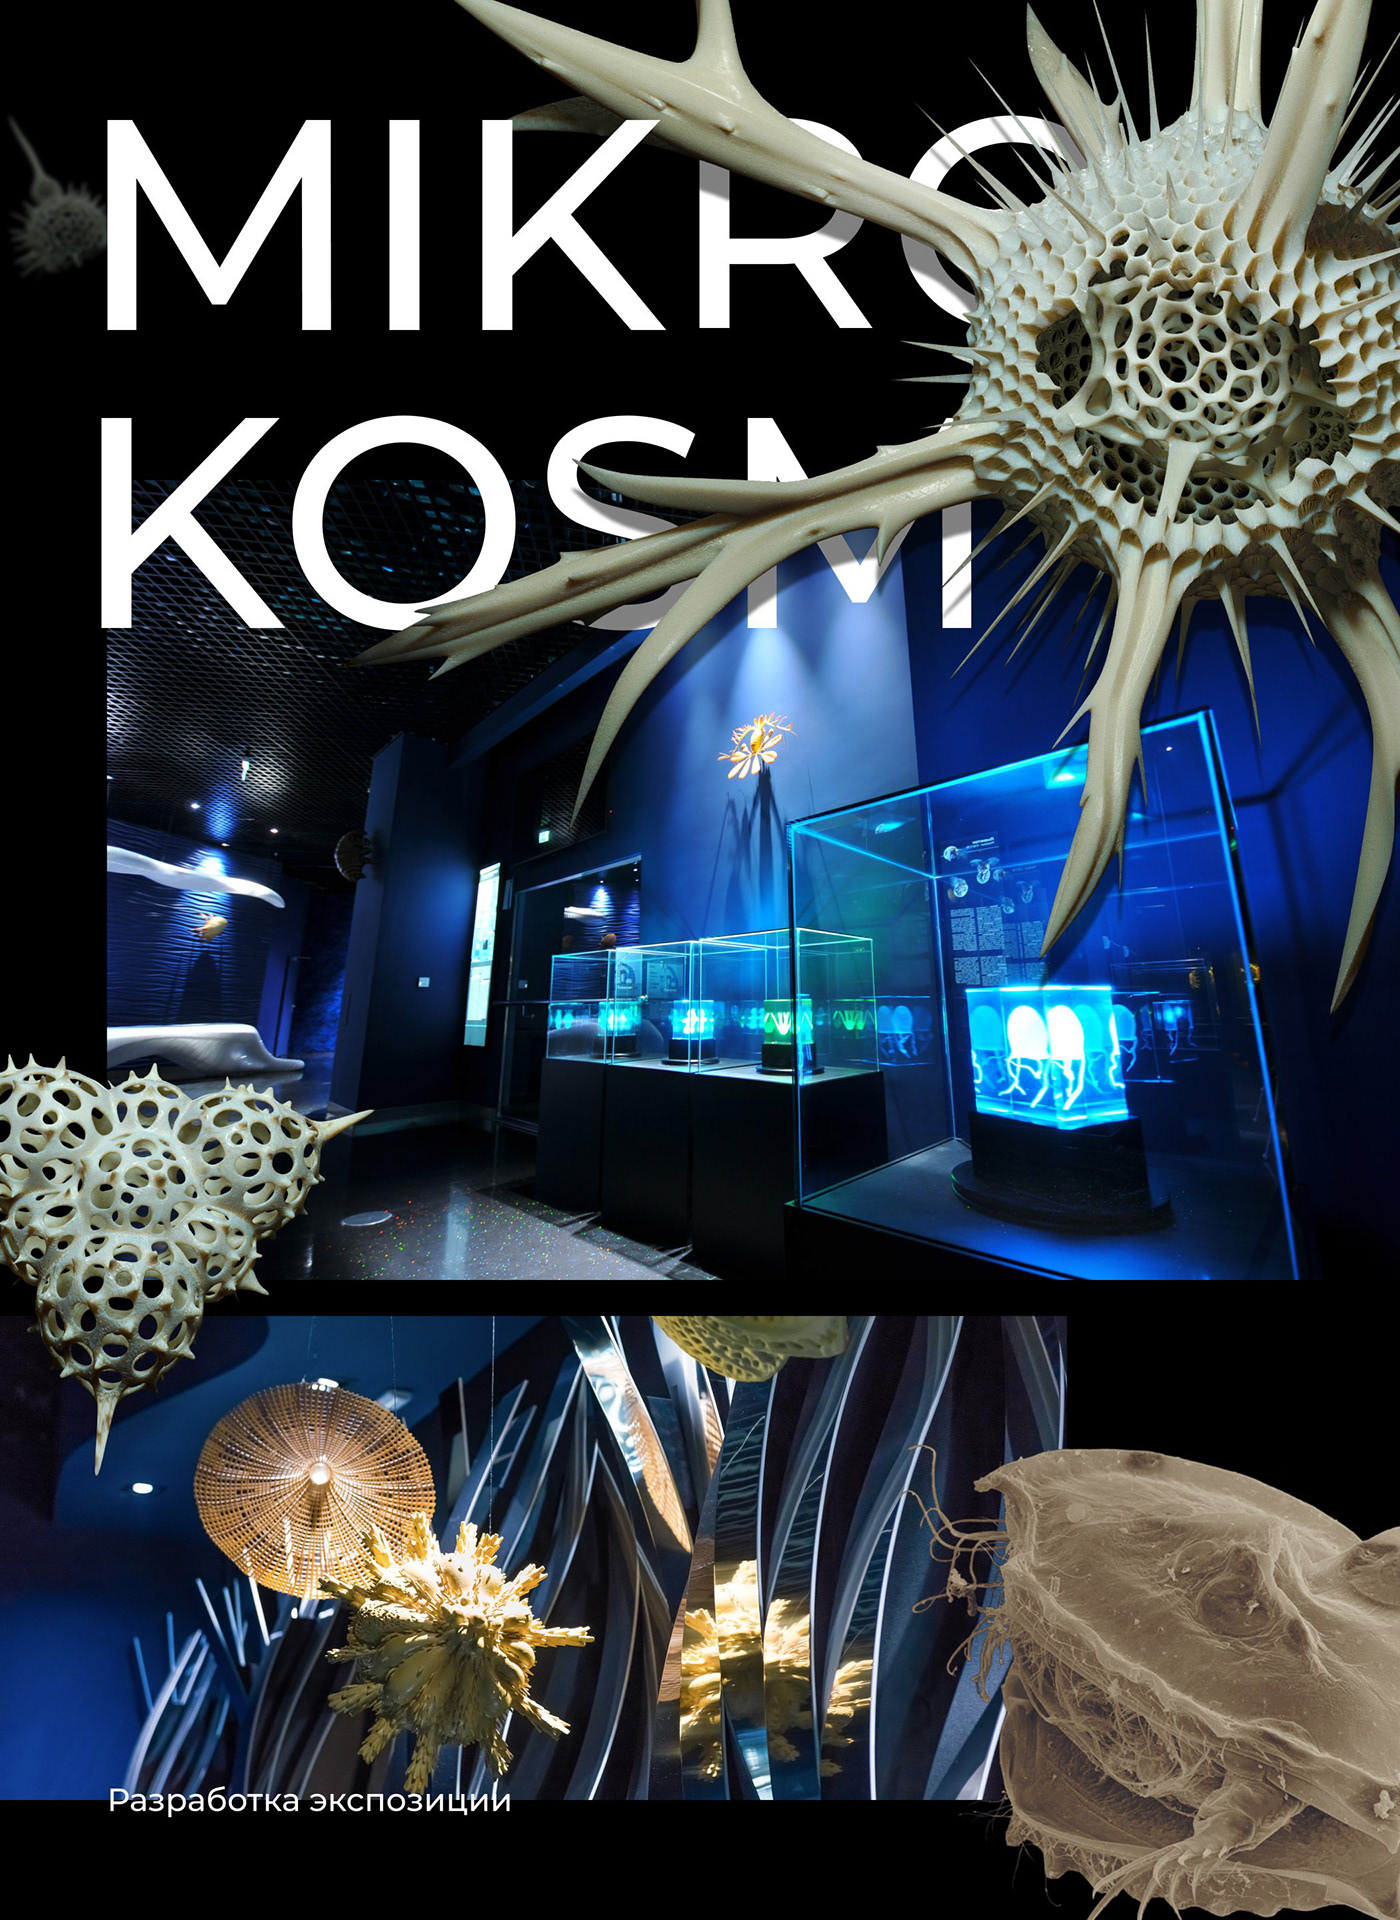 Stand micro kosm expo exebition museum oceanarium aquarium